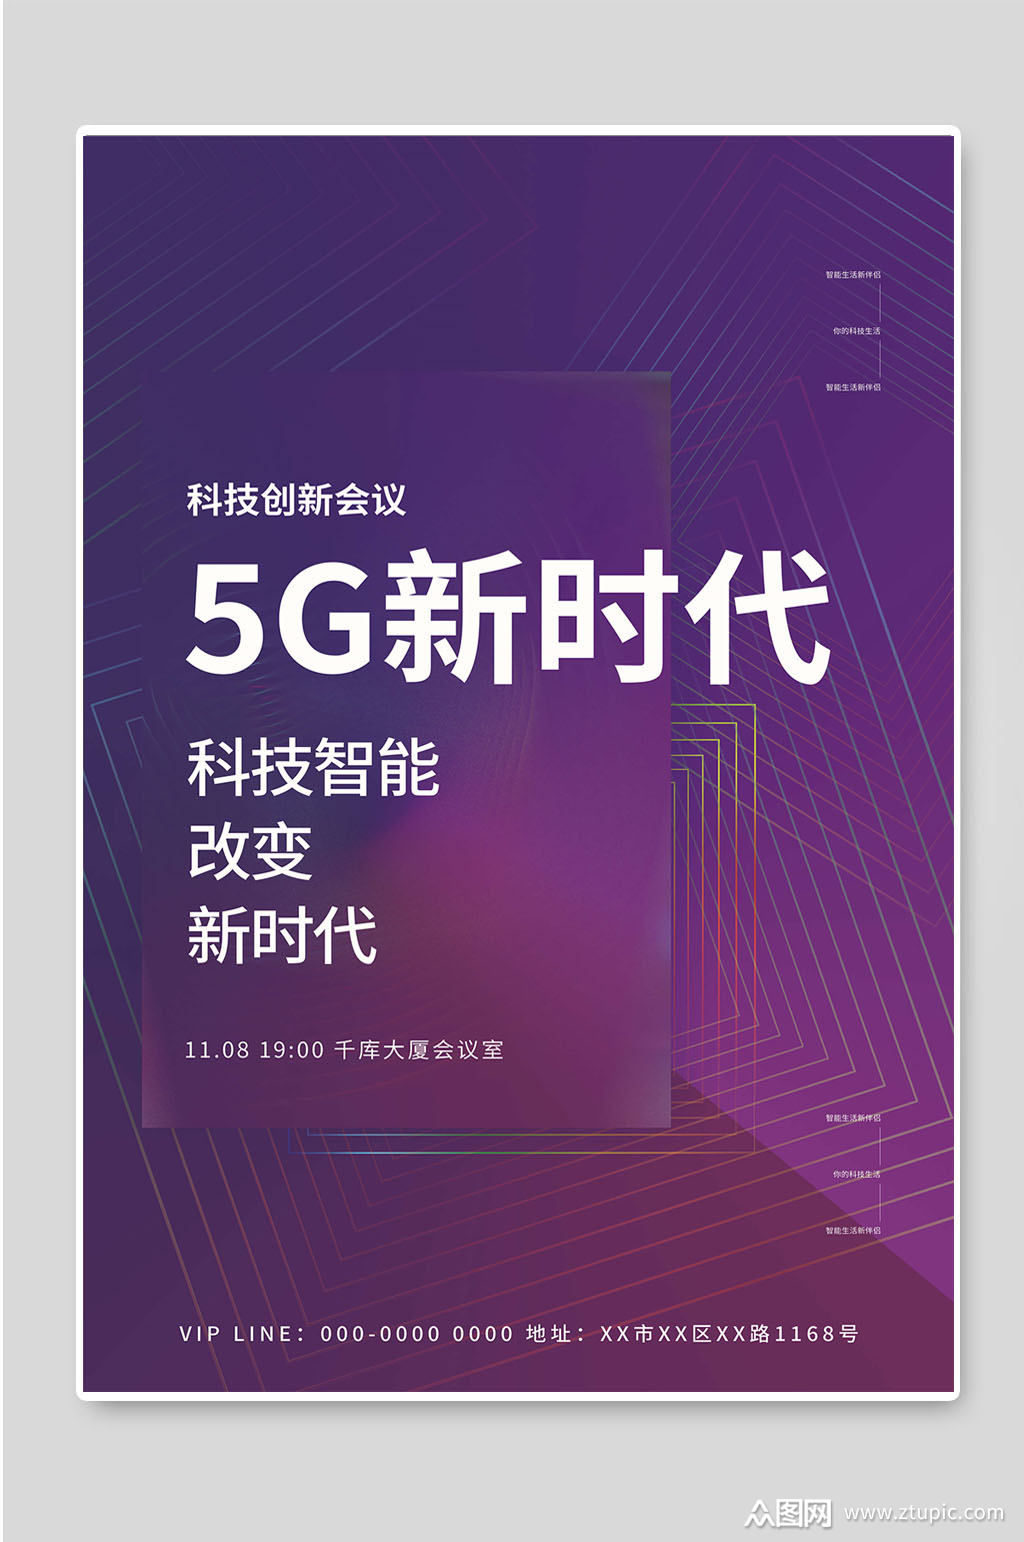 5G 技术：速度与变革的象征，开启互联网监视新时代  第4张